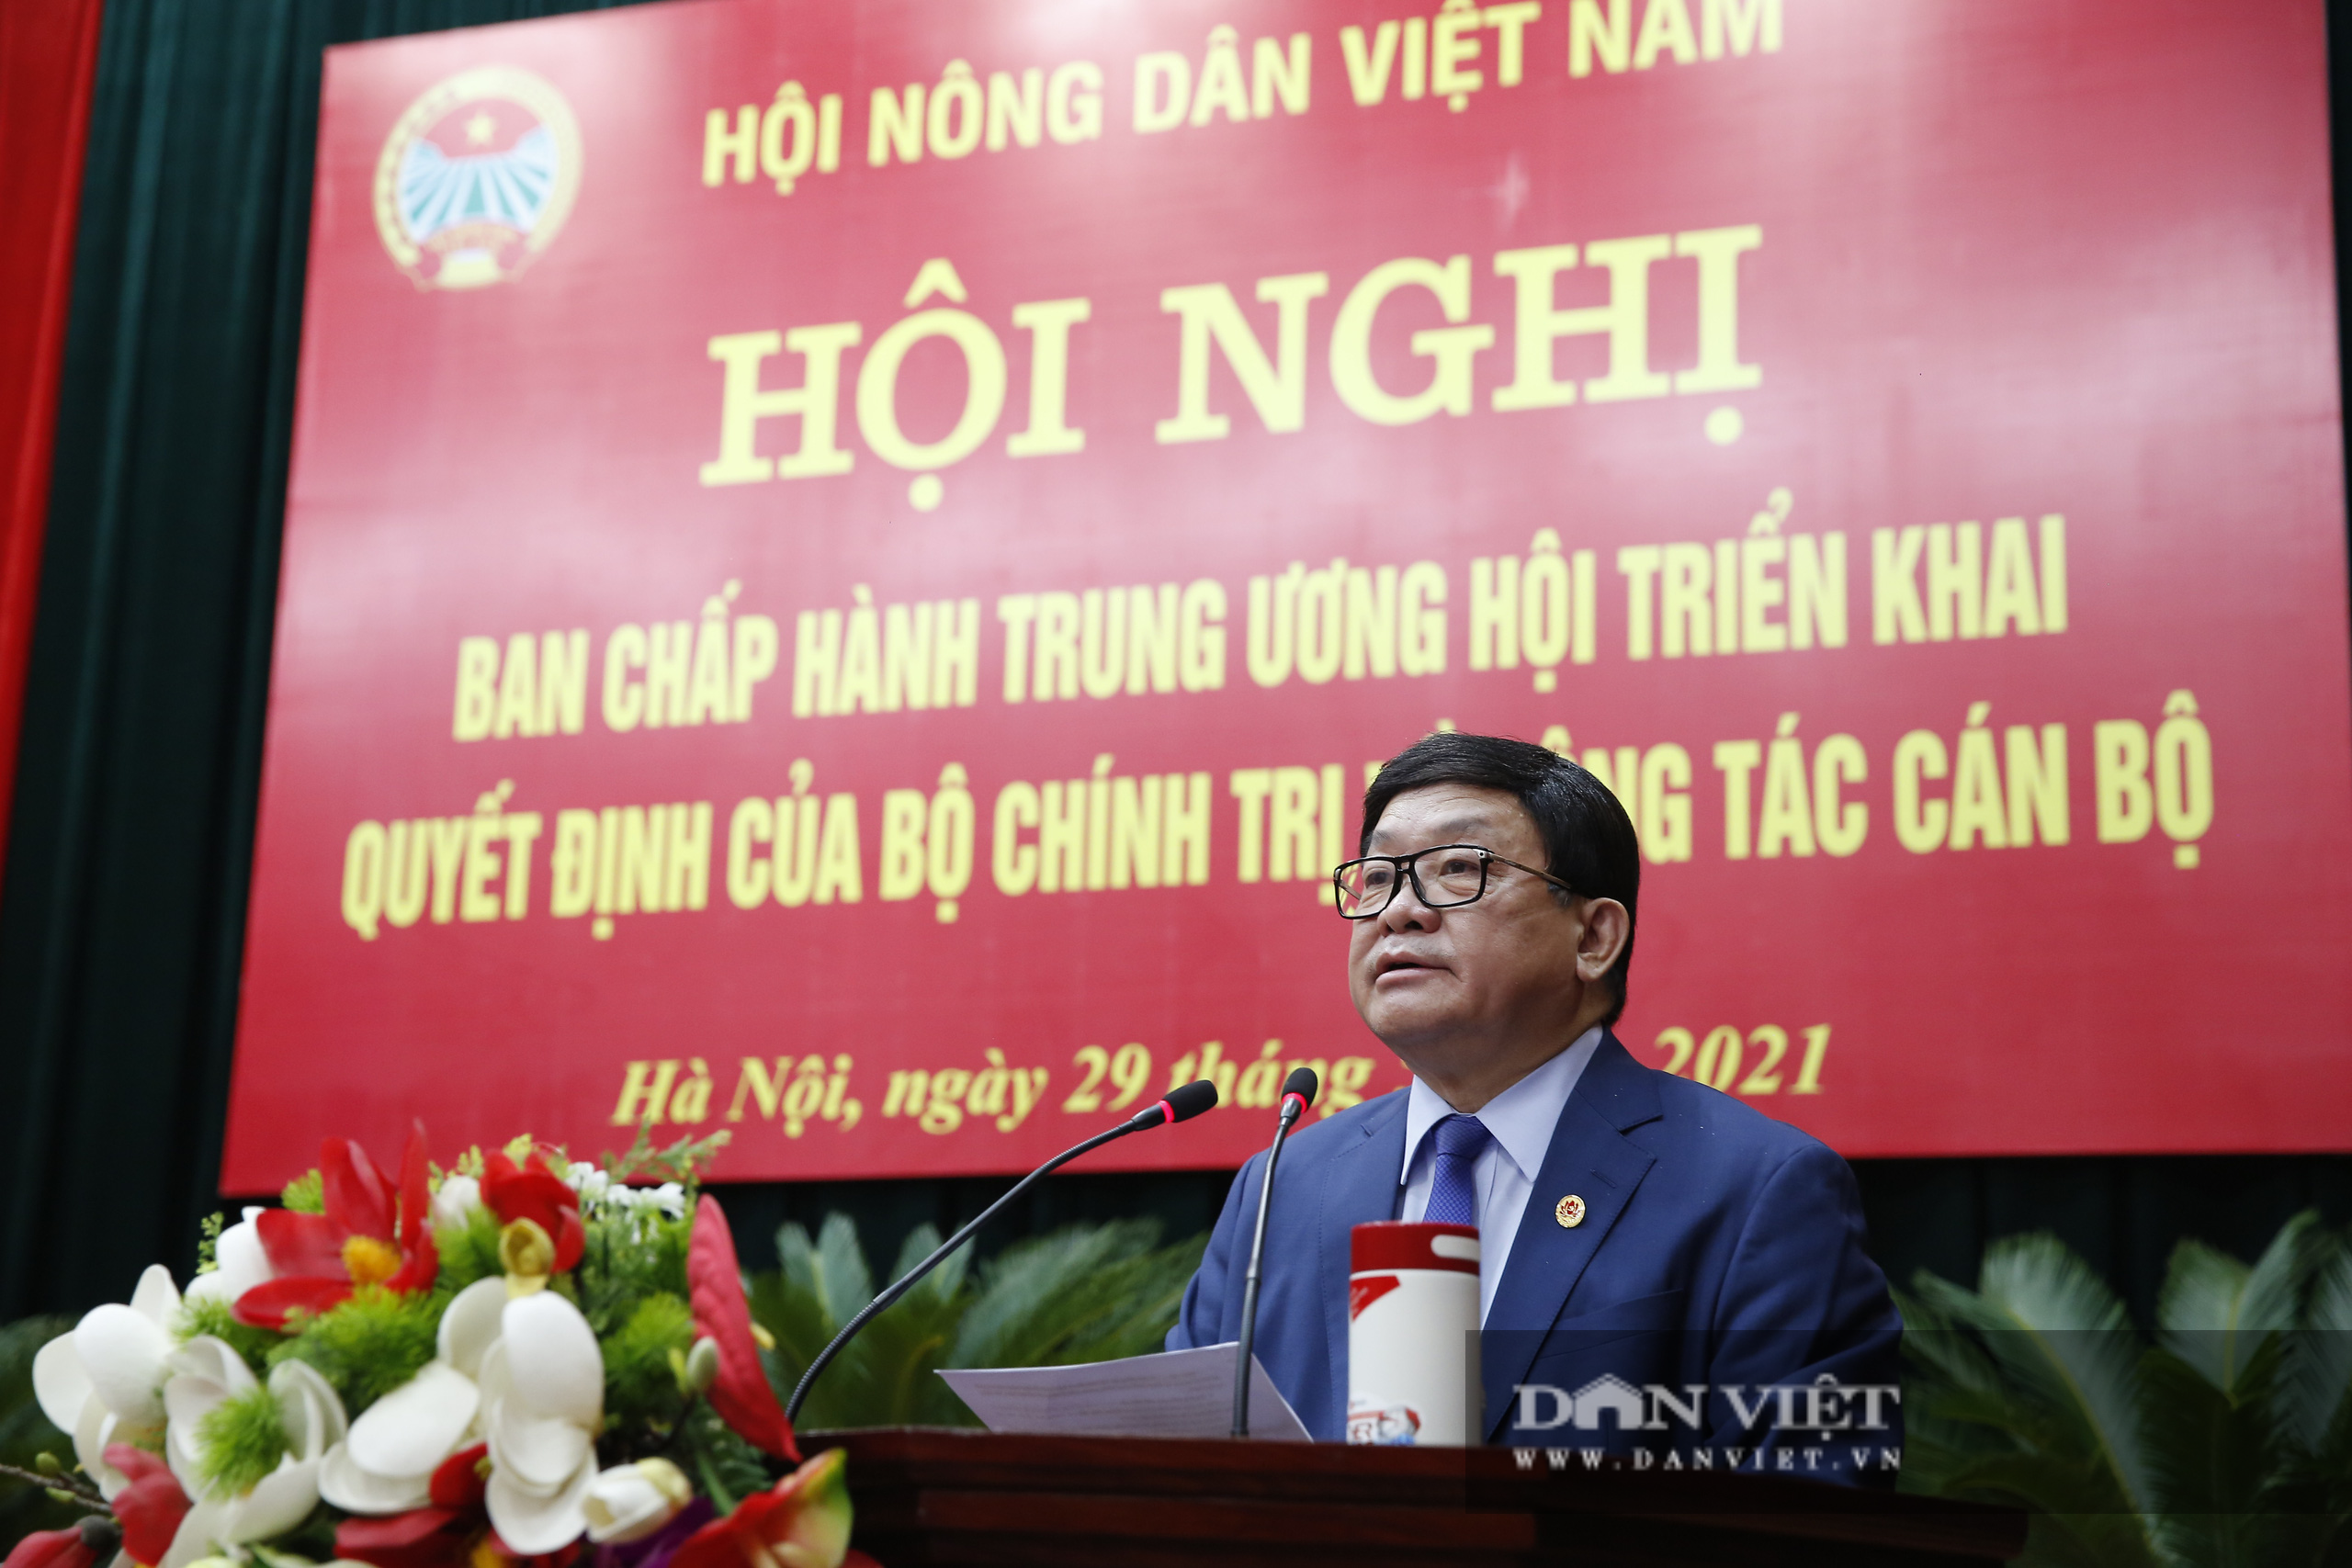 Ảnh: Hội nghị BCH TƯ Hội Nông dân Việt Nam triển khai quyết định của Bộ Chính trị về công tác cán bộ - Ảnh 2.